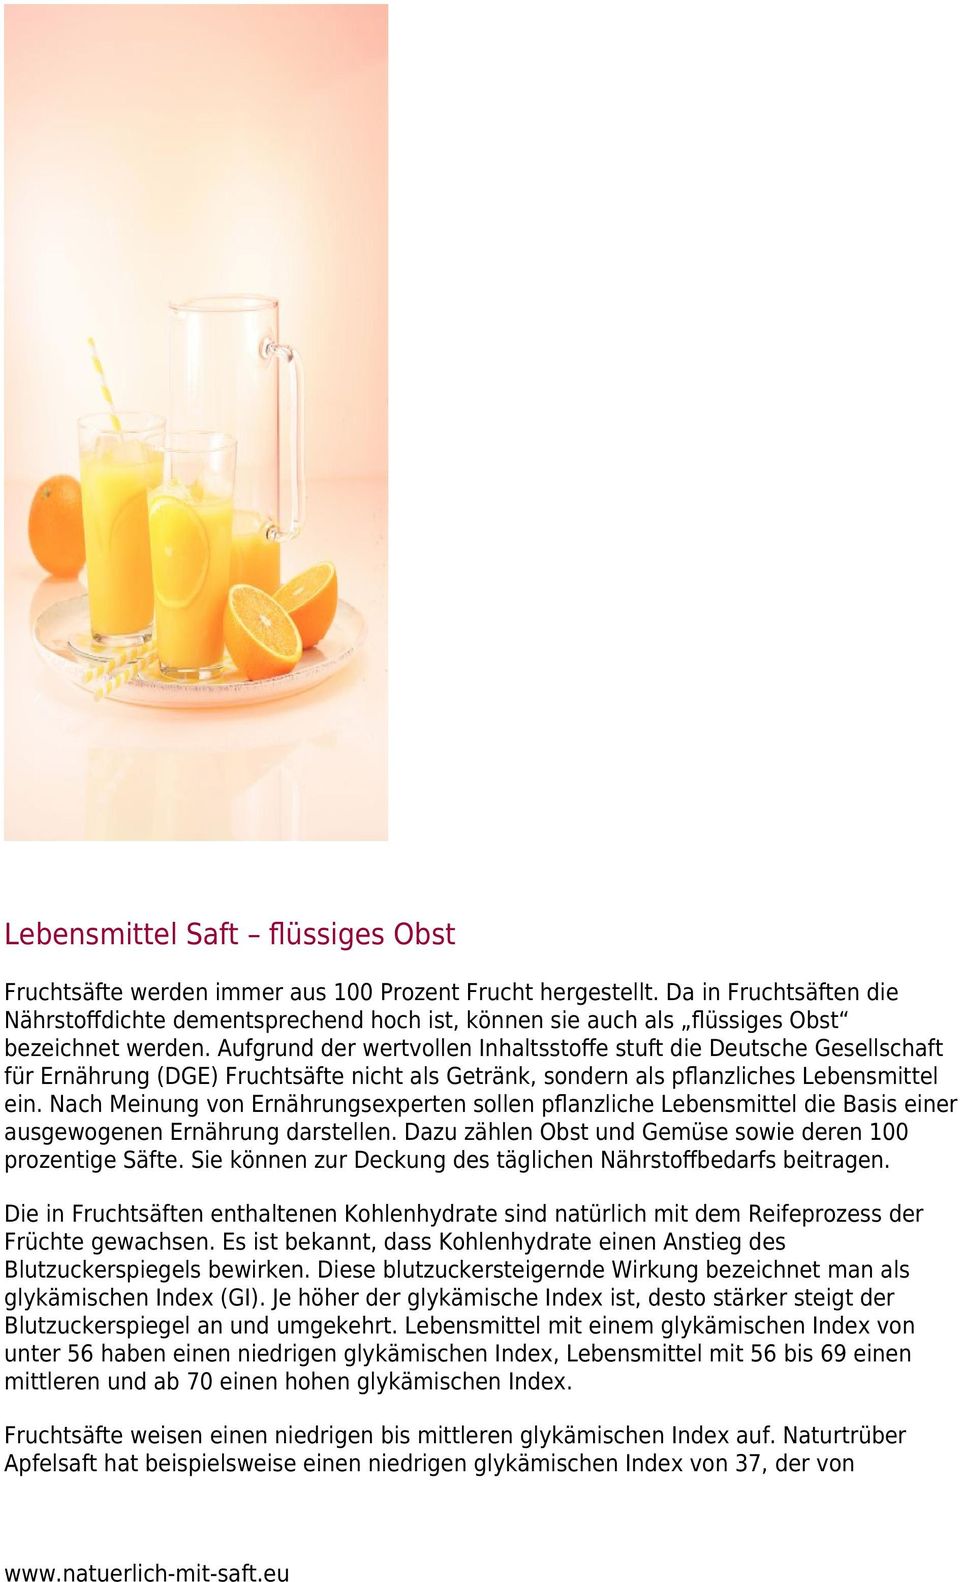 Aufgrund der wertvollen Inhaltsstoﬀe stuft die Deutsche Gesellschaft für Ernährung (DGE) Fruchtsäfte nicht als Getränk, sondern als pﬂanzliches Lebensmittel ein.